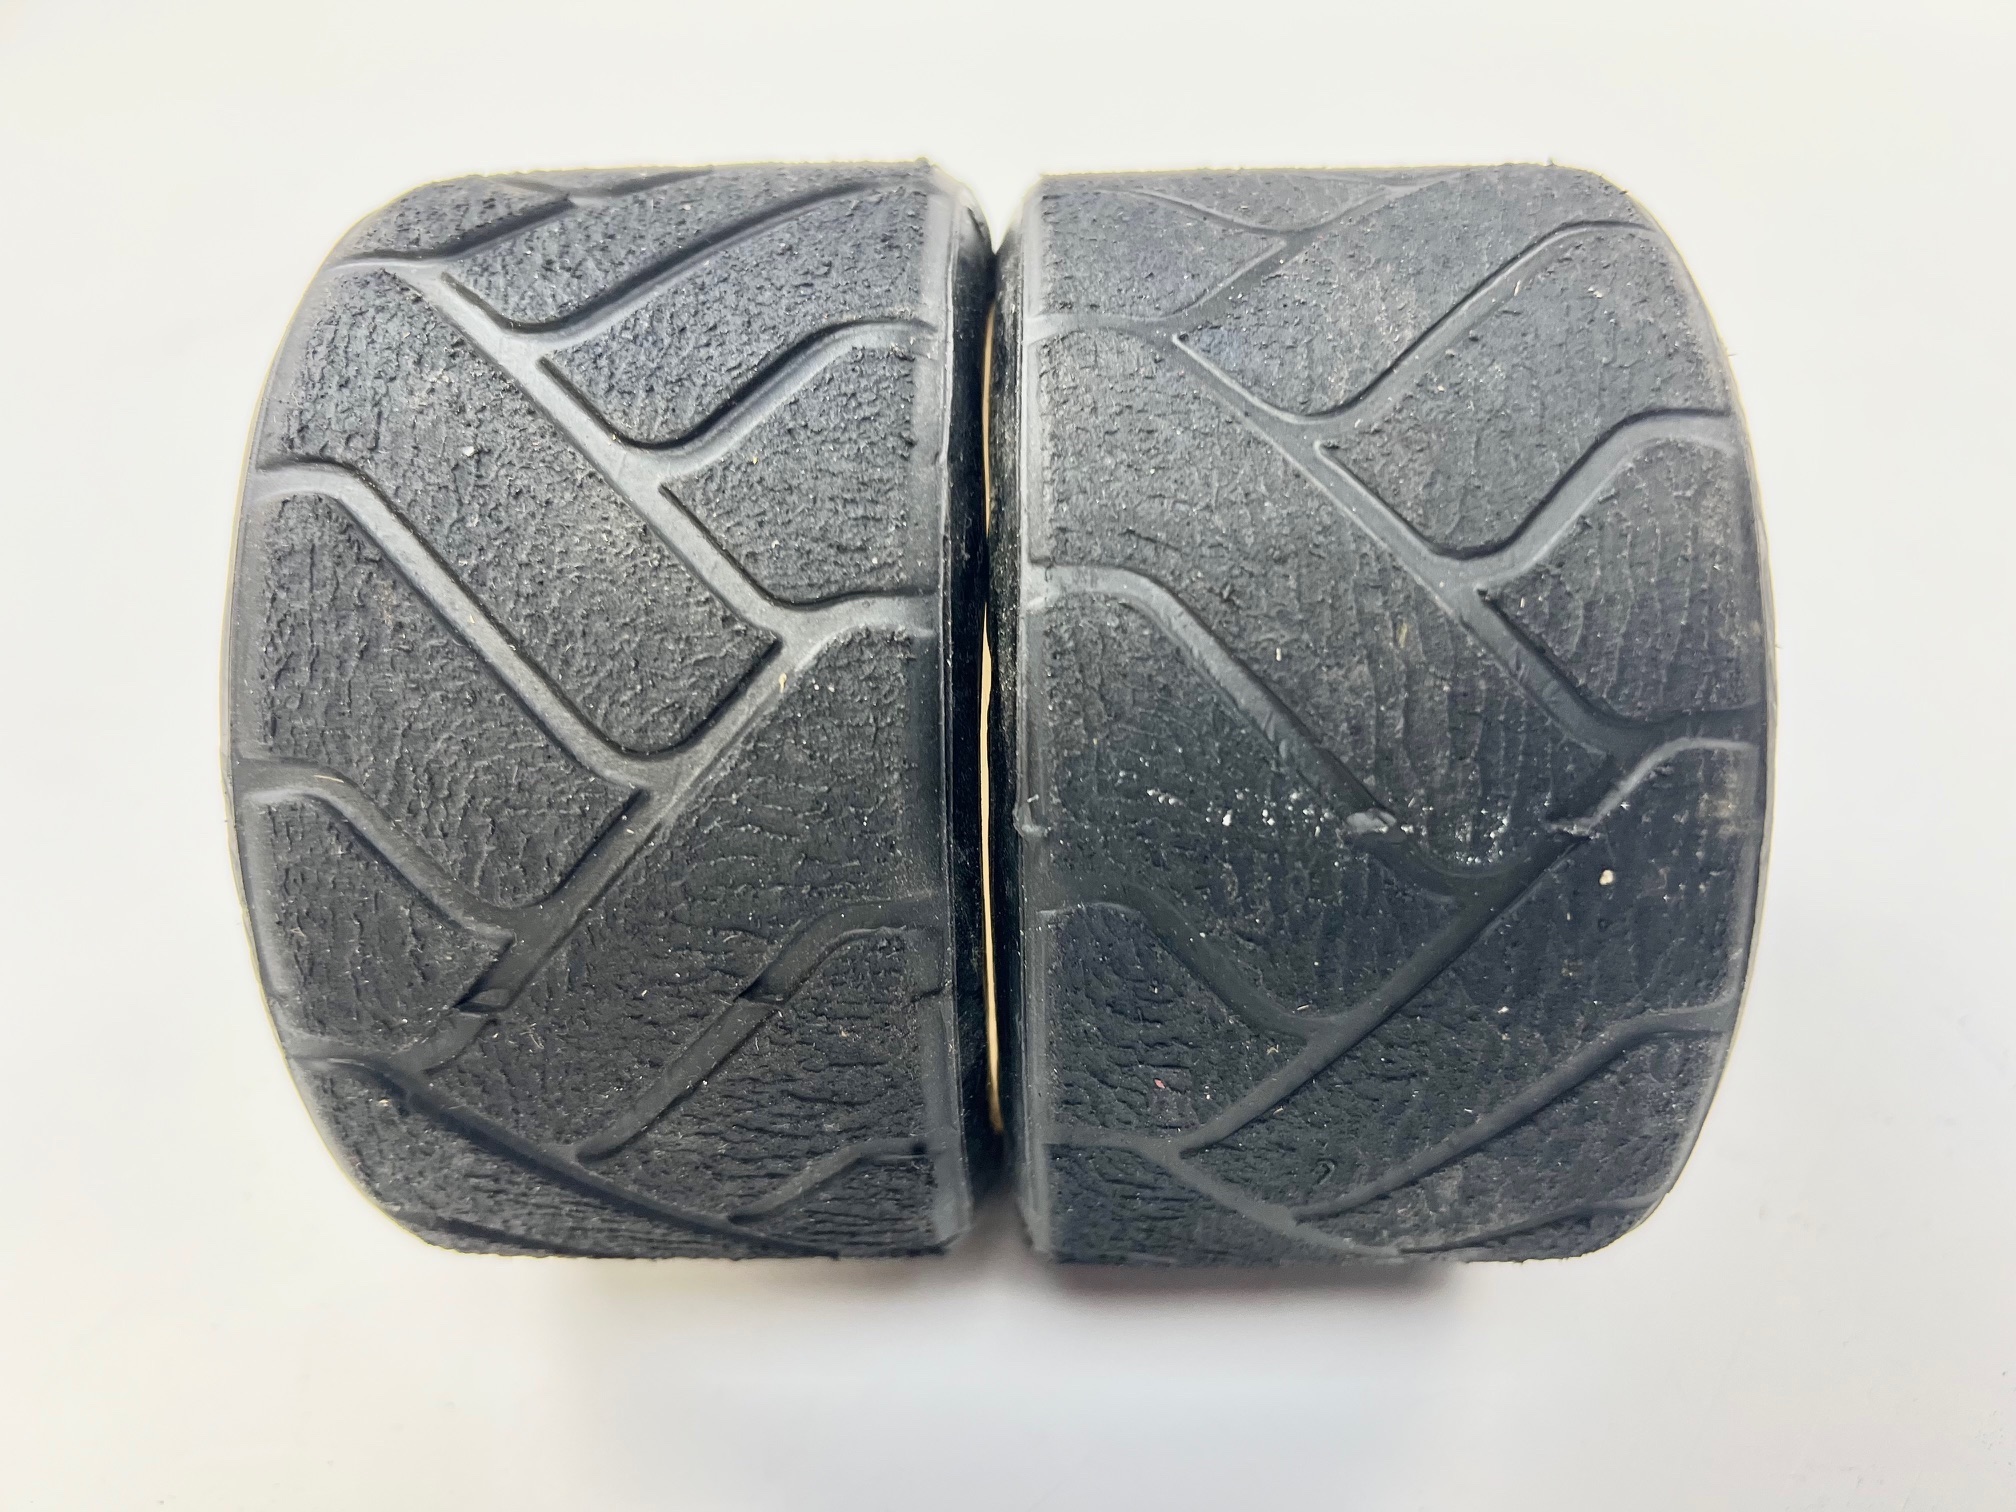 PMT 10 Kronos Reifen auf ATS Felge mit 18 mm Vierkant, gebraucht "27"